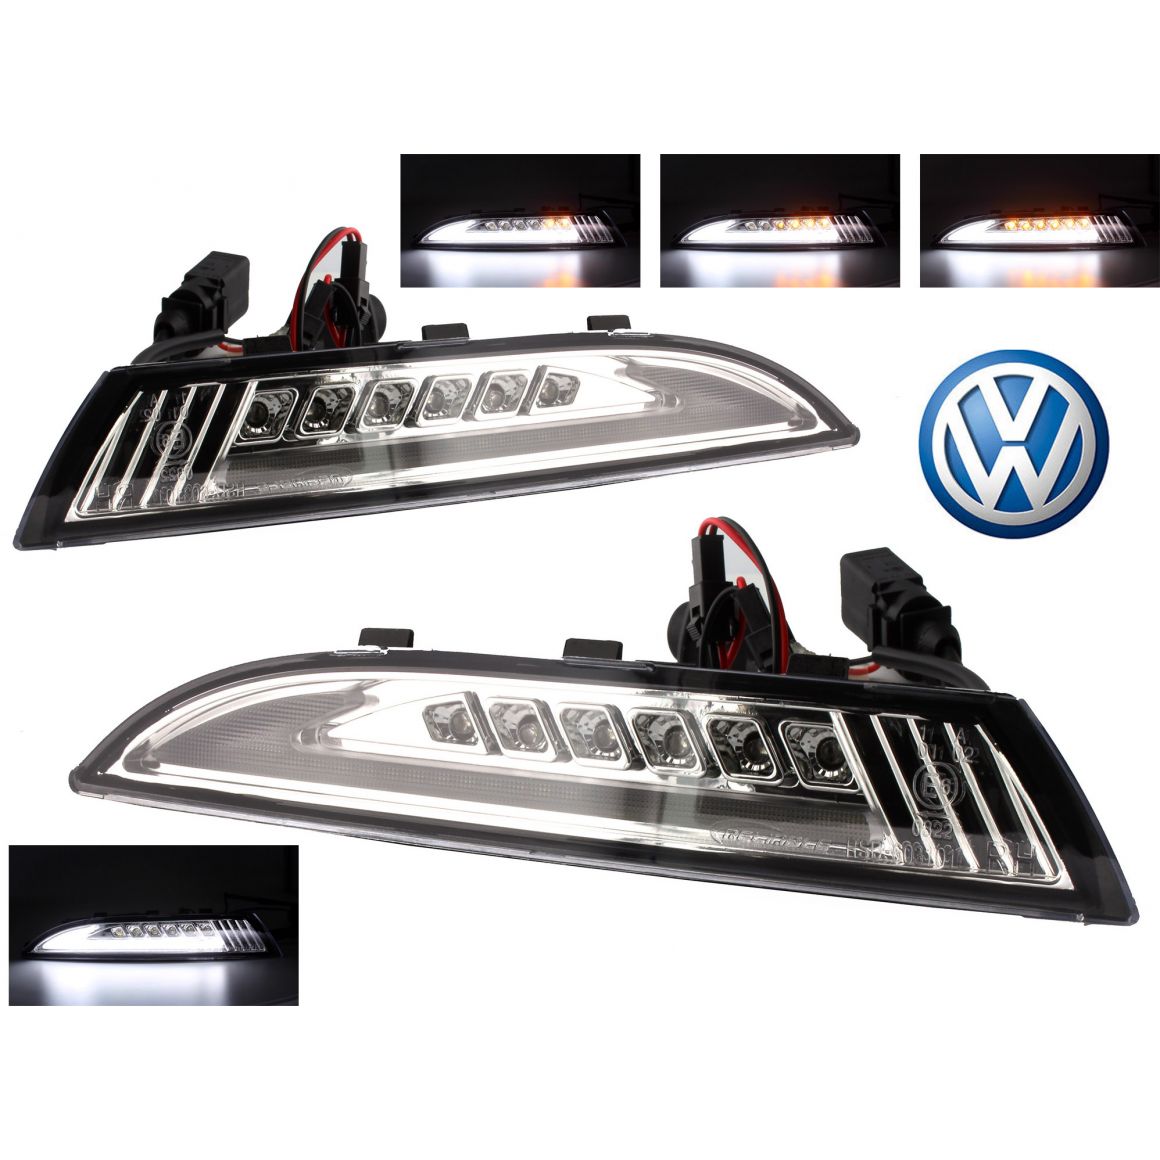 VW Volkswagen Scirocco LED feux de position latéraux aucun avertissement erreurs-T10 W5w 3smd 